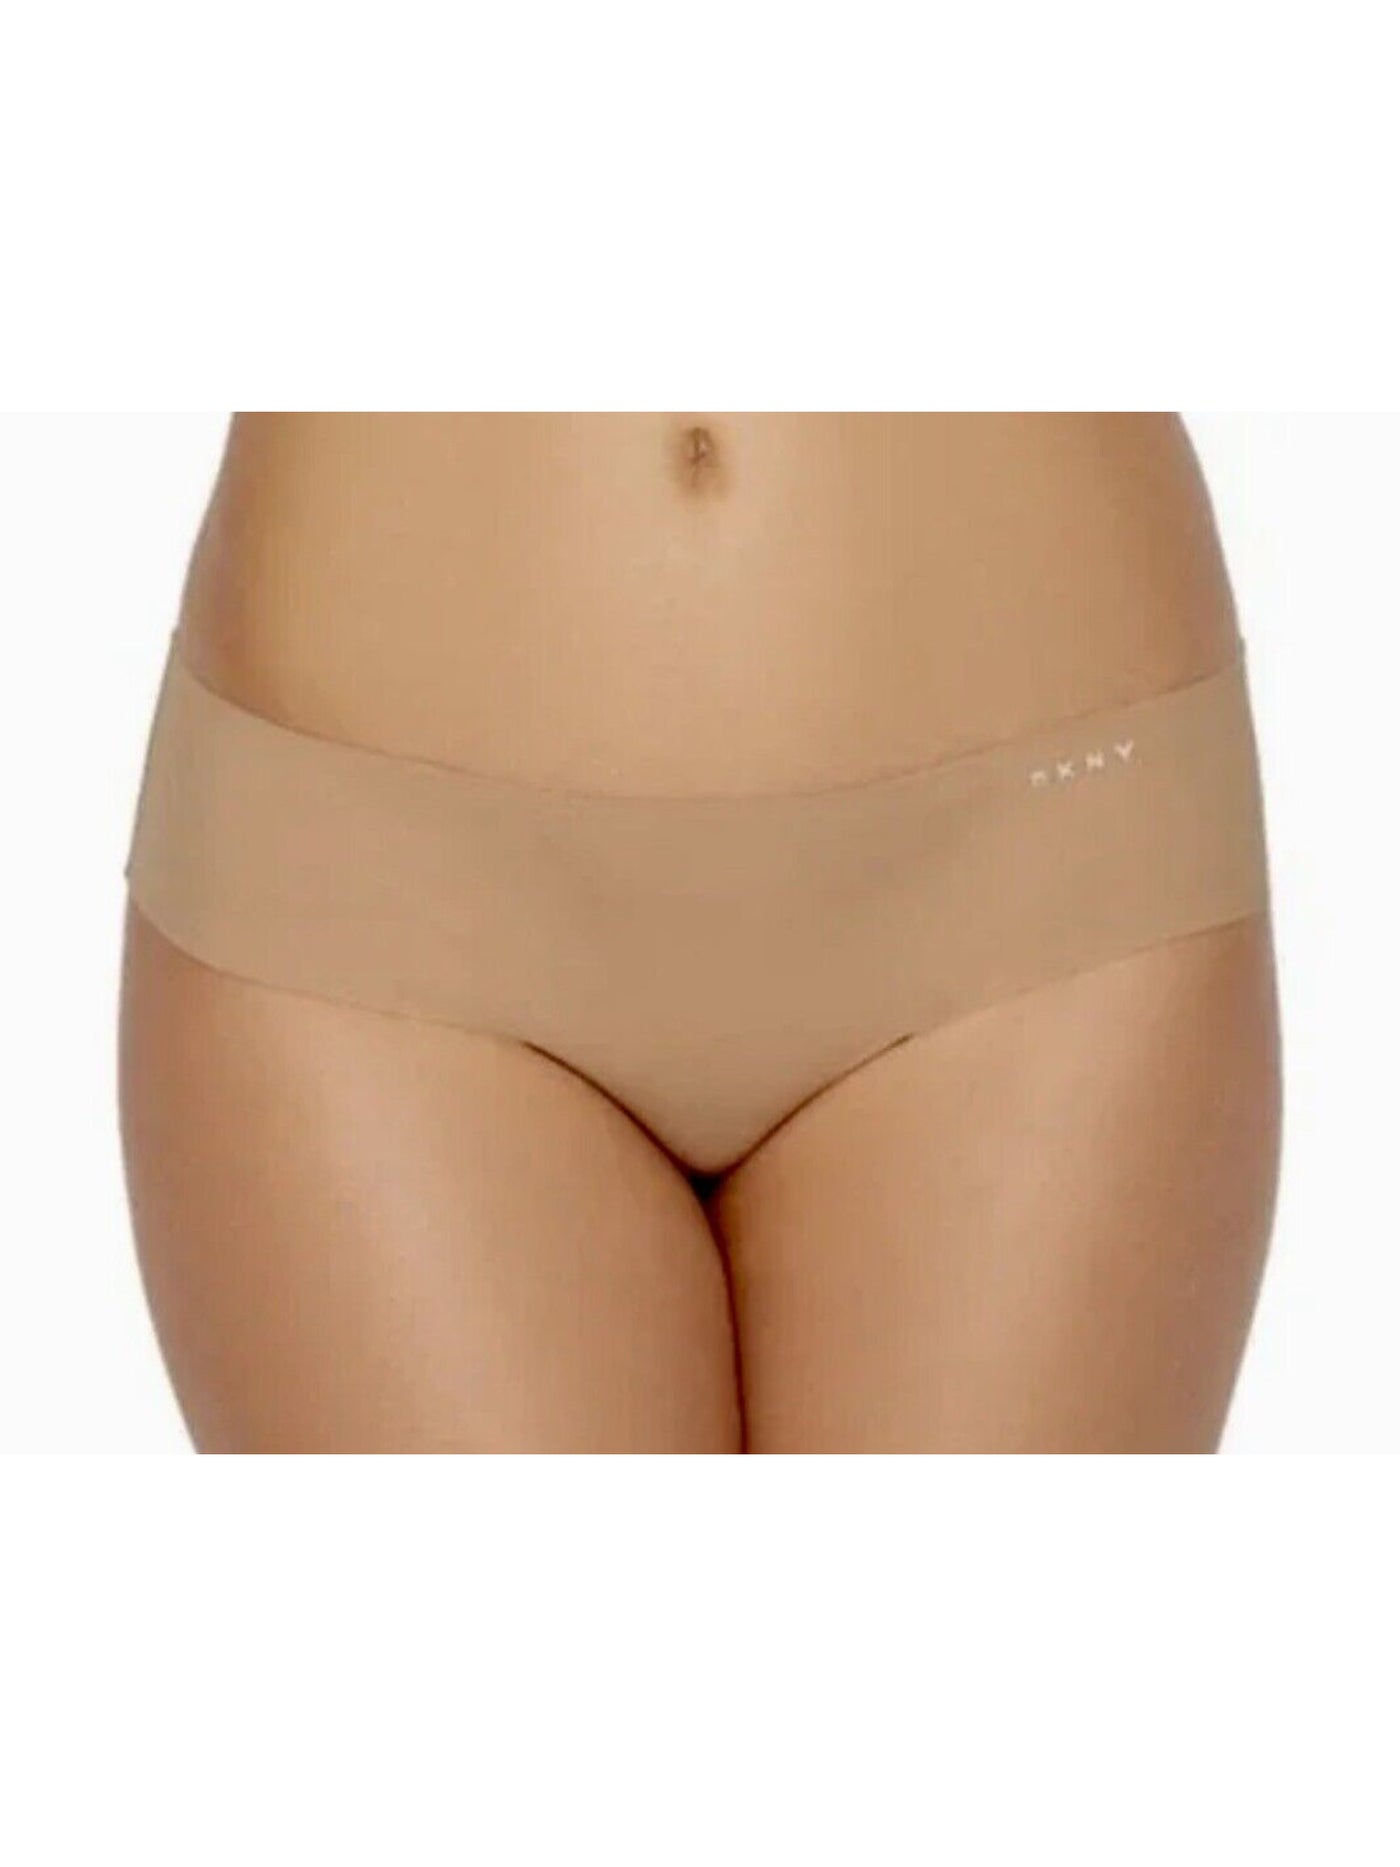 DKNY Intimates Beige Bikini Underwear L